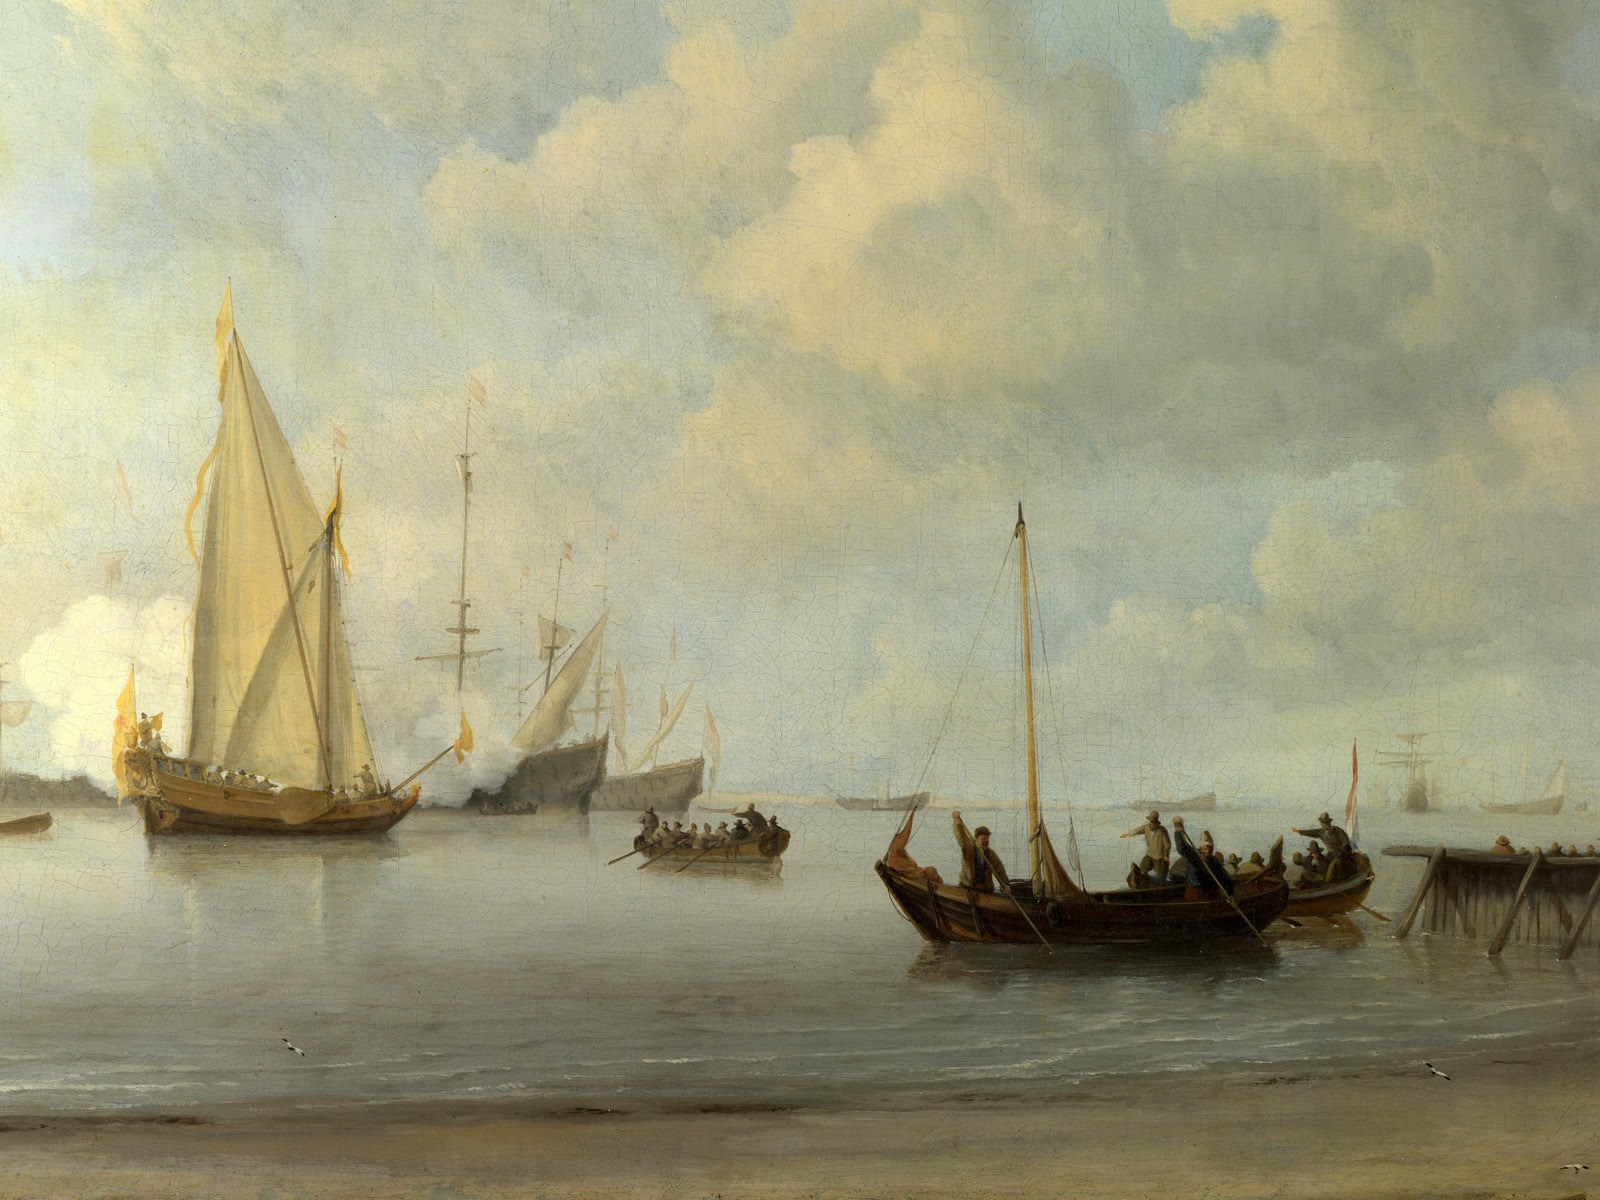 伦敦画廊帆船 壁纸(二)6 - 1600x1200